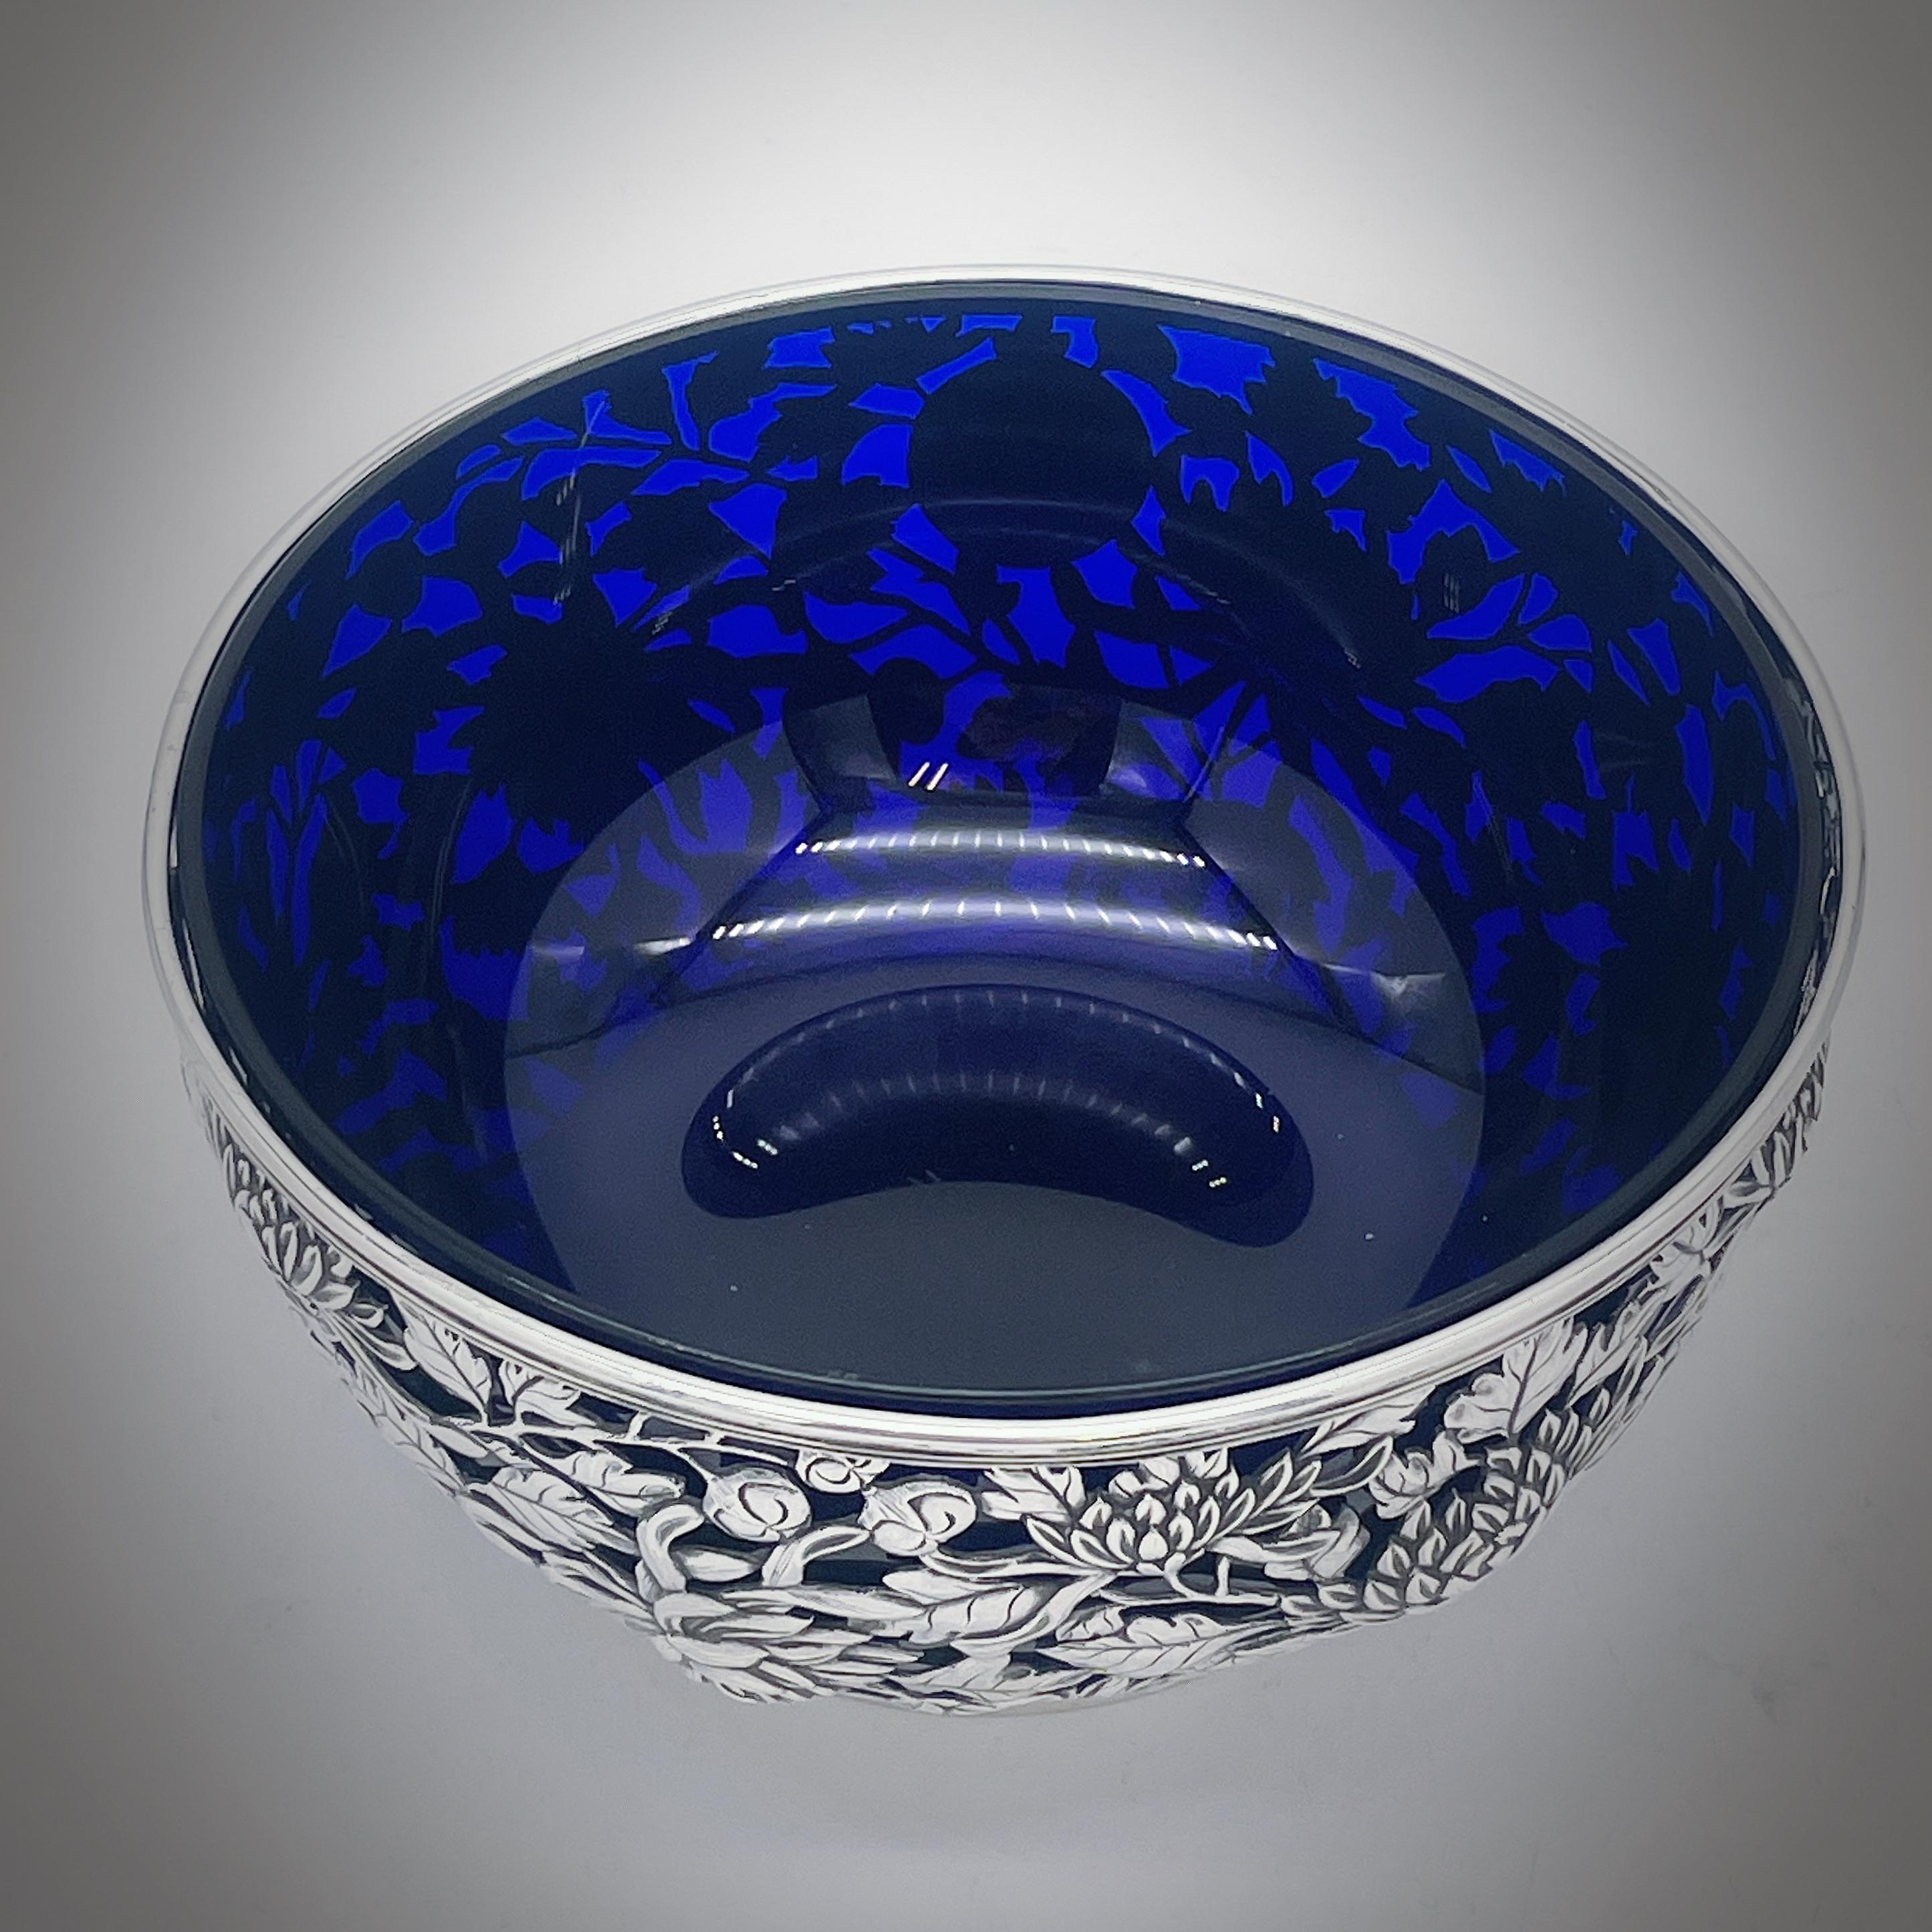 Un bol en argent d'exportation chinois vers 1890, avec une doublure en verre bleu plus tardive. La coupe est percée d'un décor de chrysanthèmes merveilleusement détaillé, comporte un cartouche rond vacant et repose sur un pied à collet uni. Le bol a